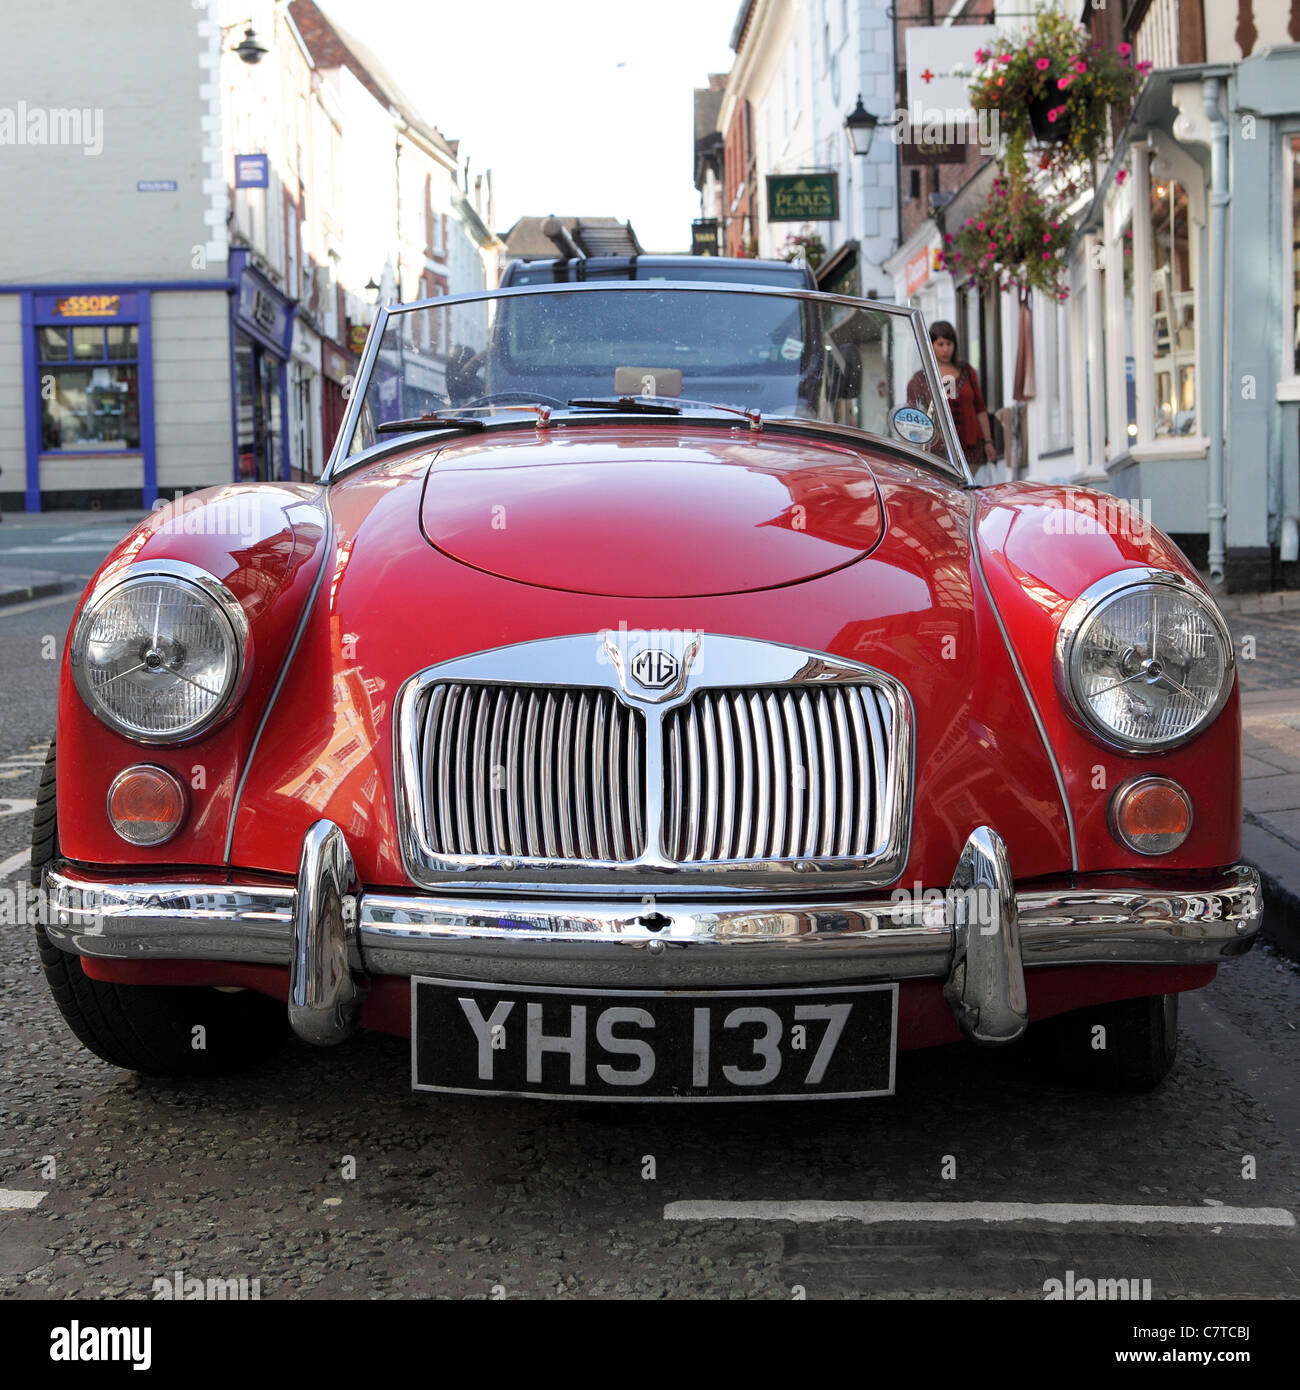 Mg mga 1600,aspetto frontale di questo british due porte sport classic,visto in mardol,shrewsbury. Foto Stock